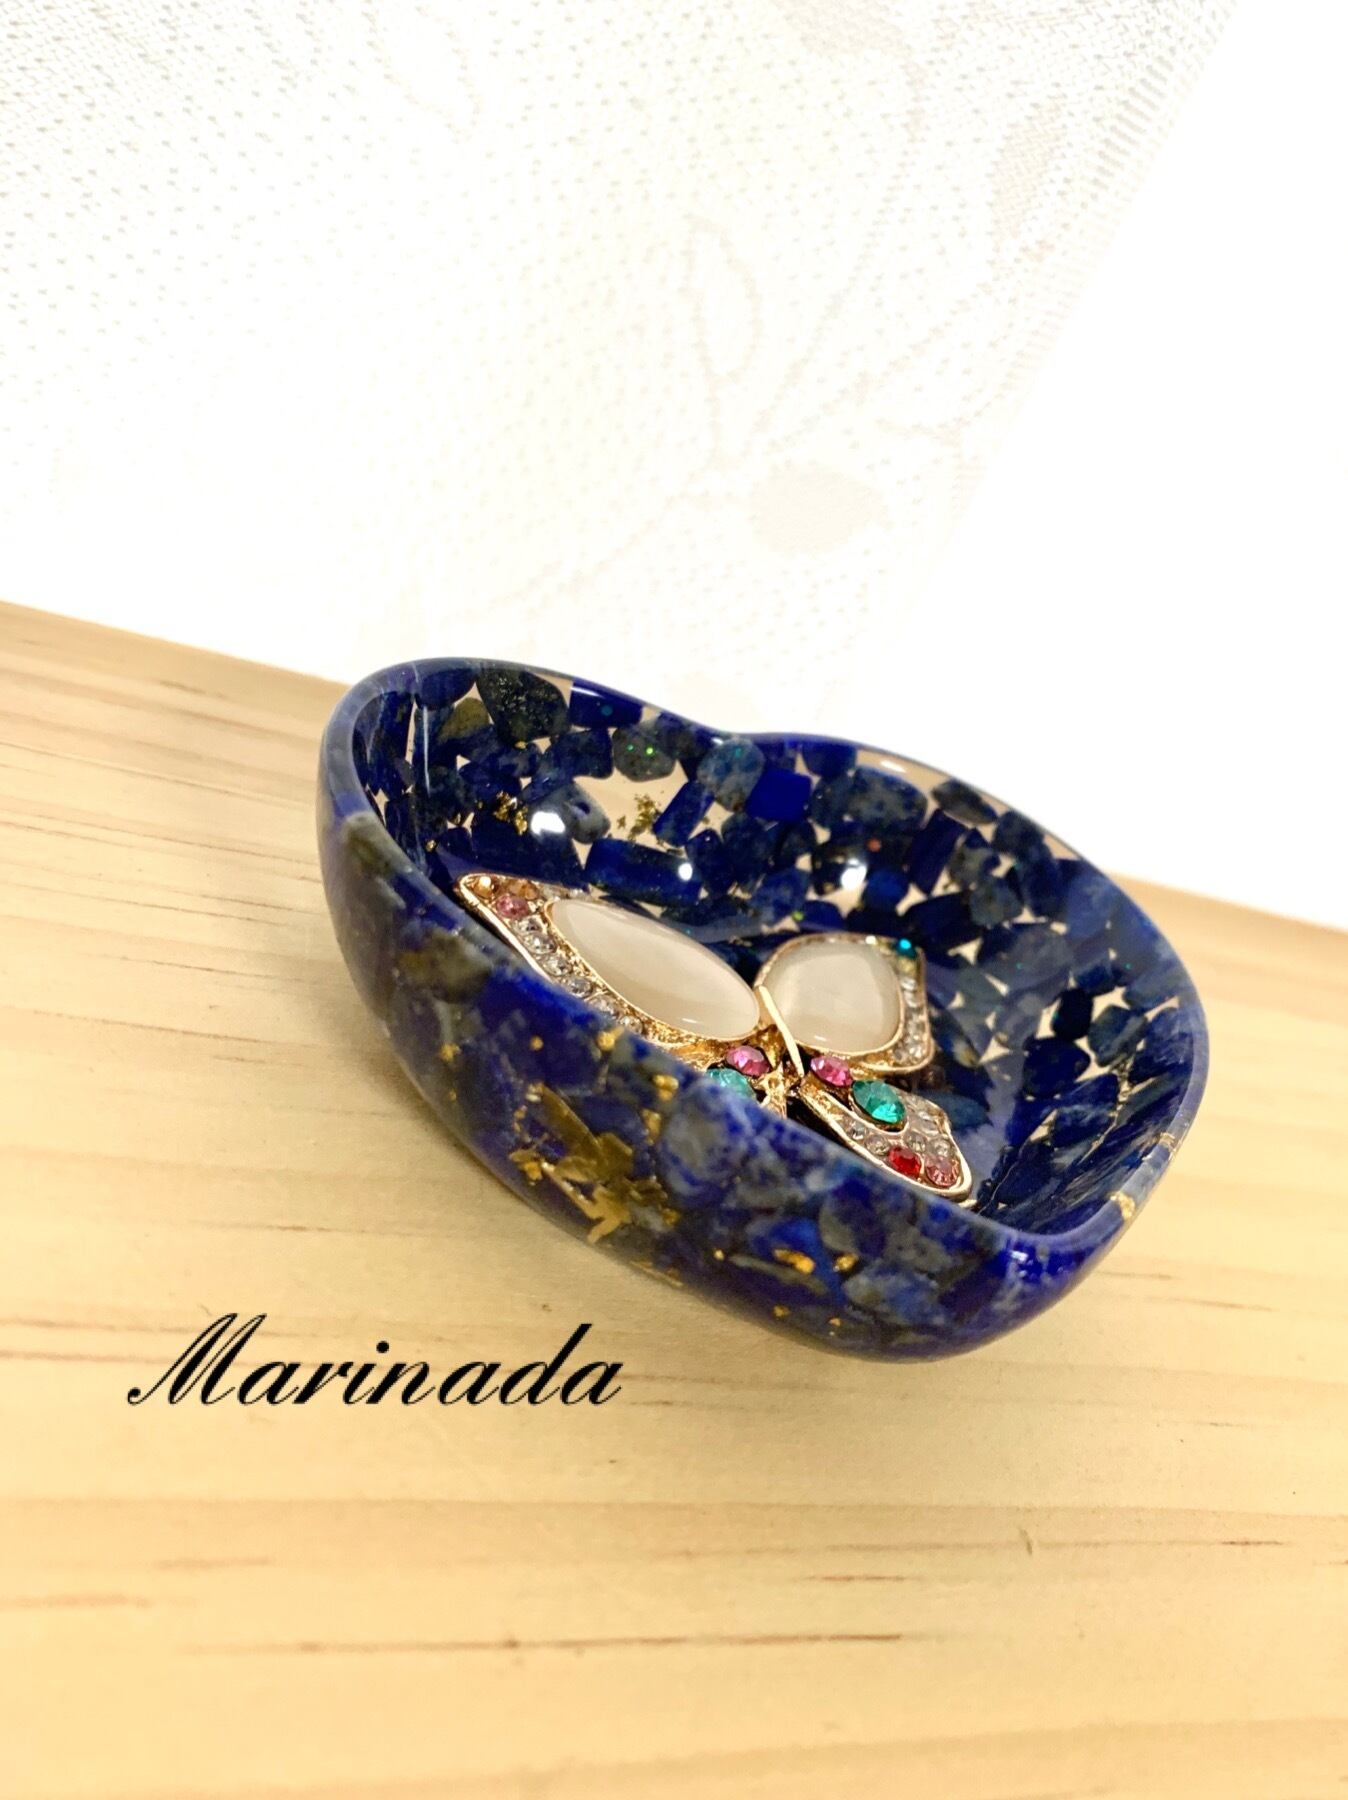 再販開始⭐︎ 蝶とハートの可愛い小物入れ オルゴナイト ラピス | Marinada